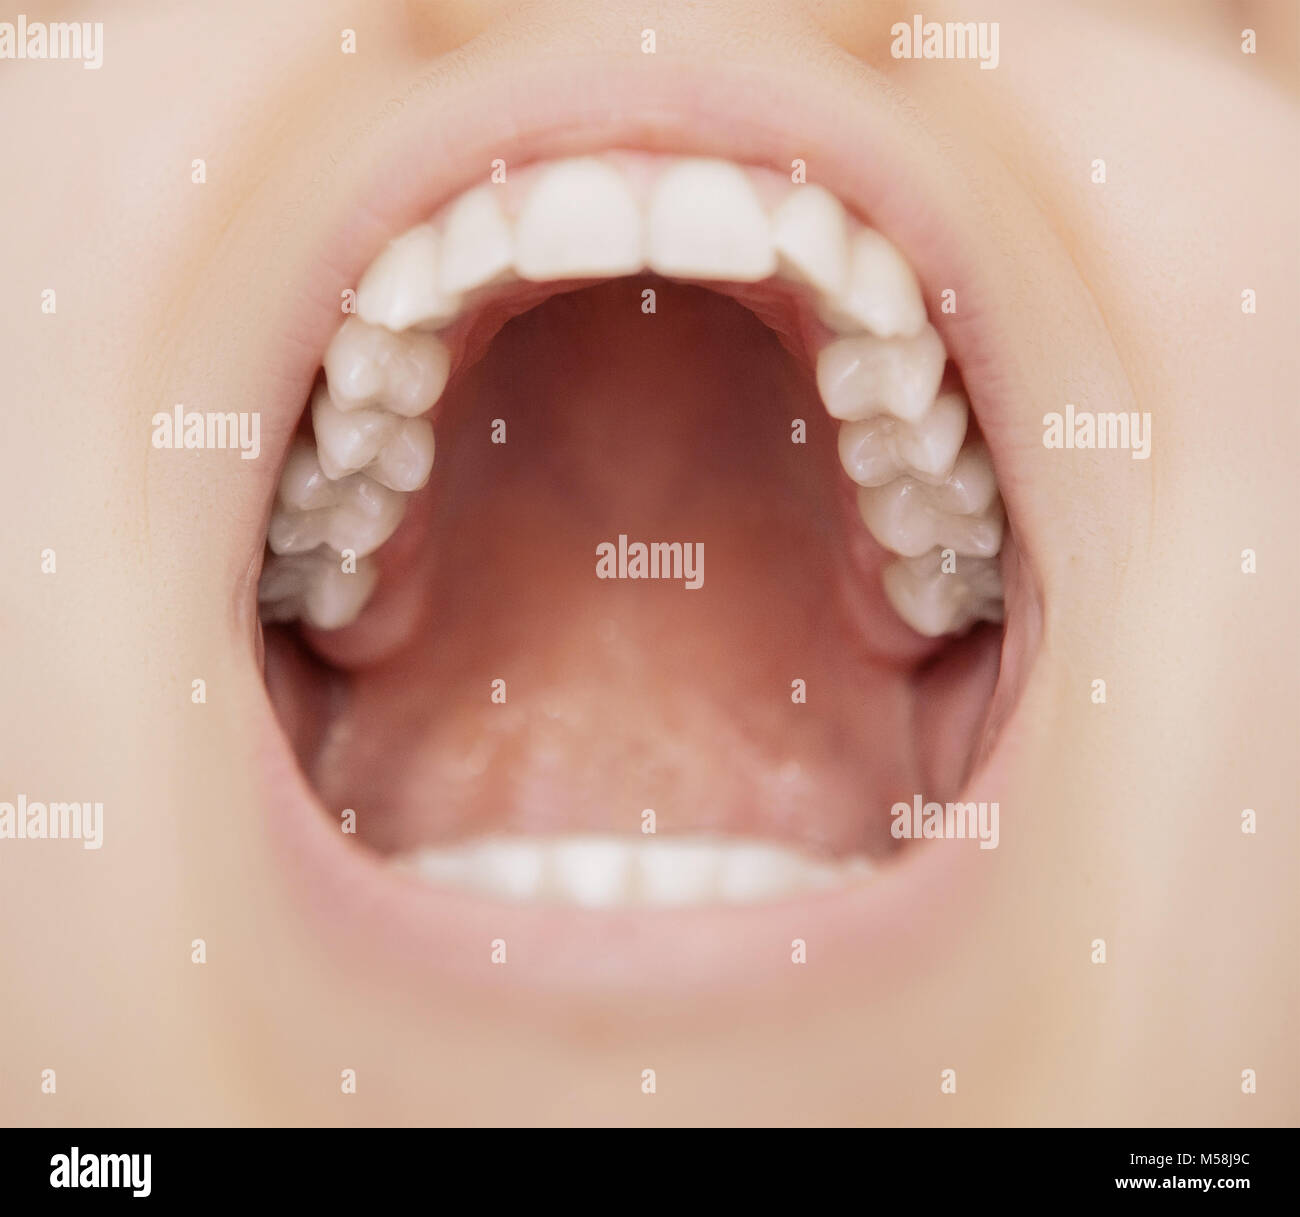 Mund Mit Weissen Zahn Zahnpflege Stockfotografie Alamy